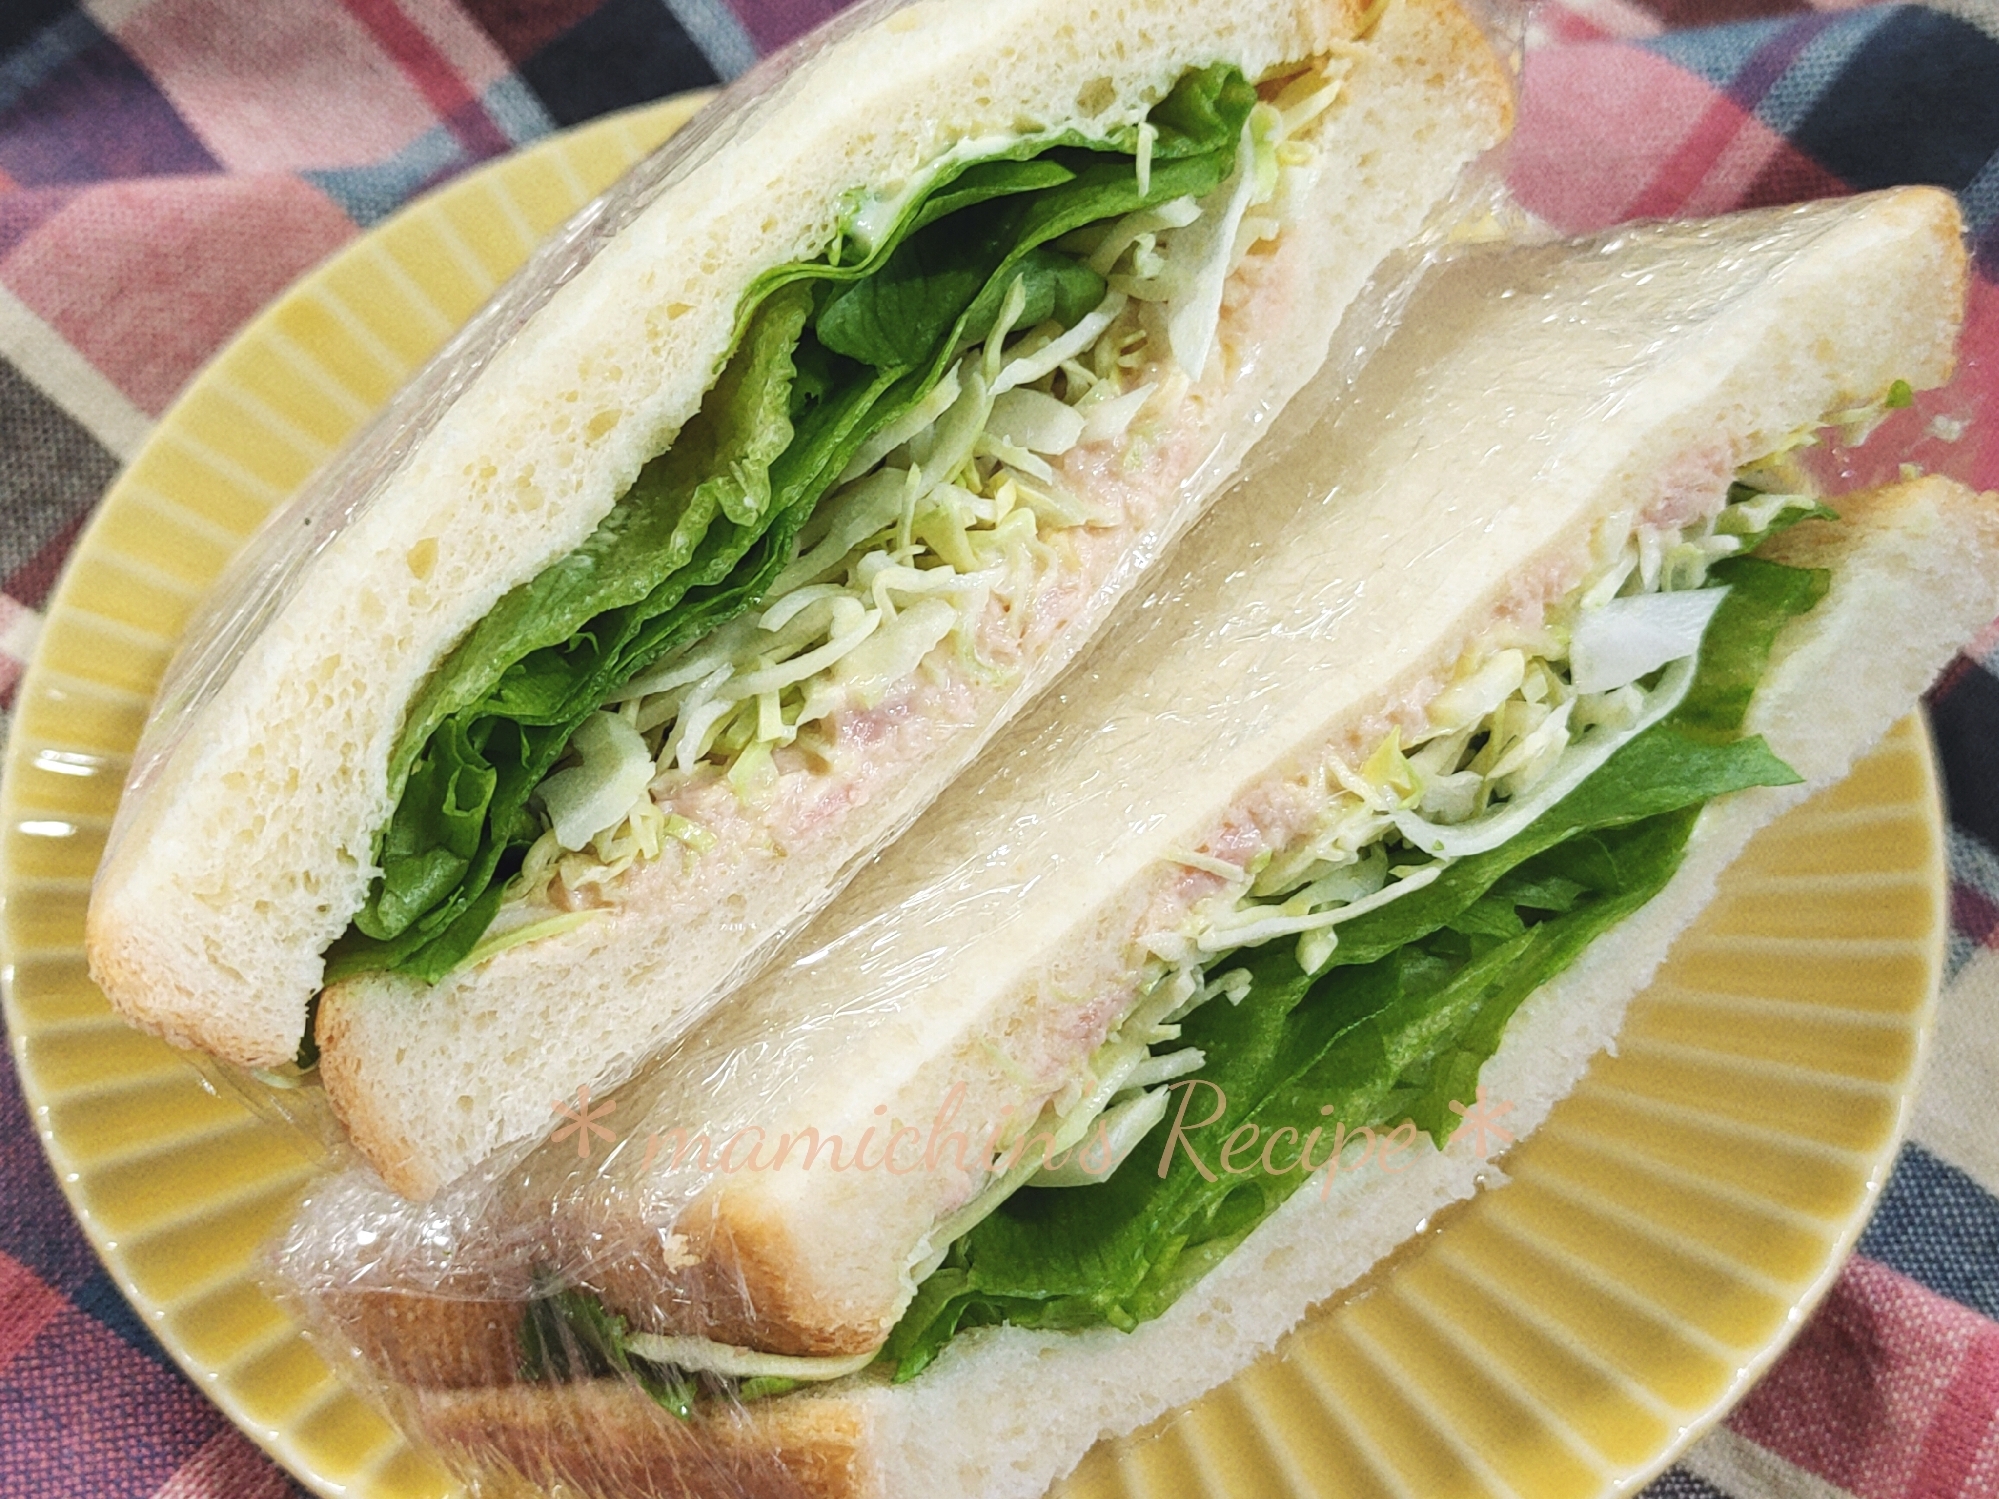 ツナ&柚子胡椒〜大人味のサンドイッチ